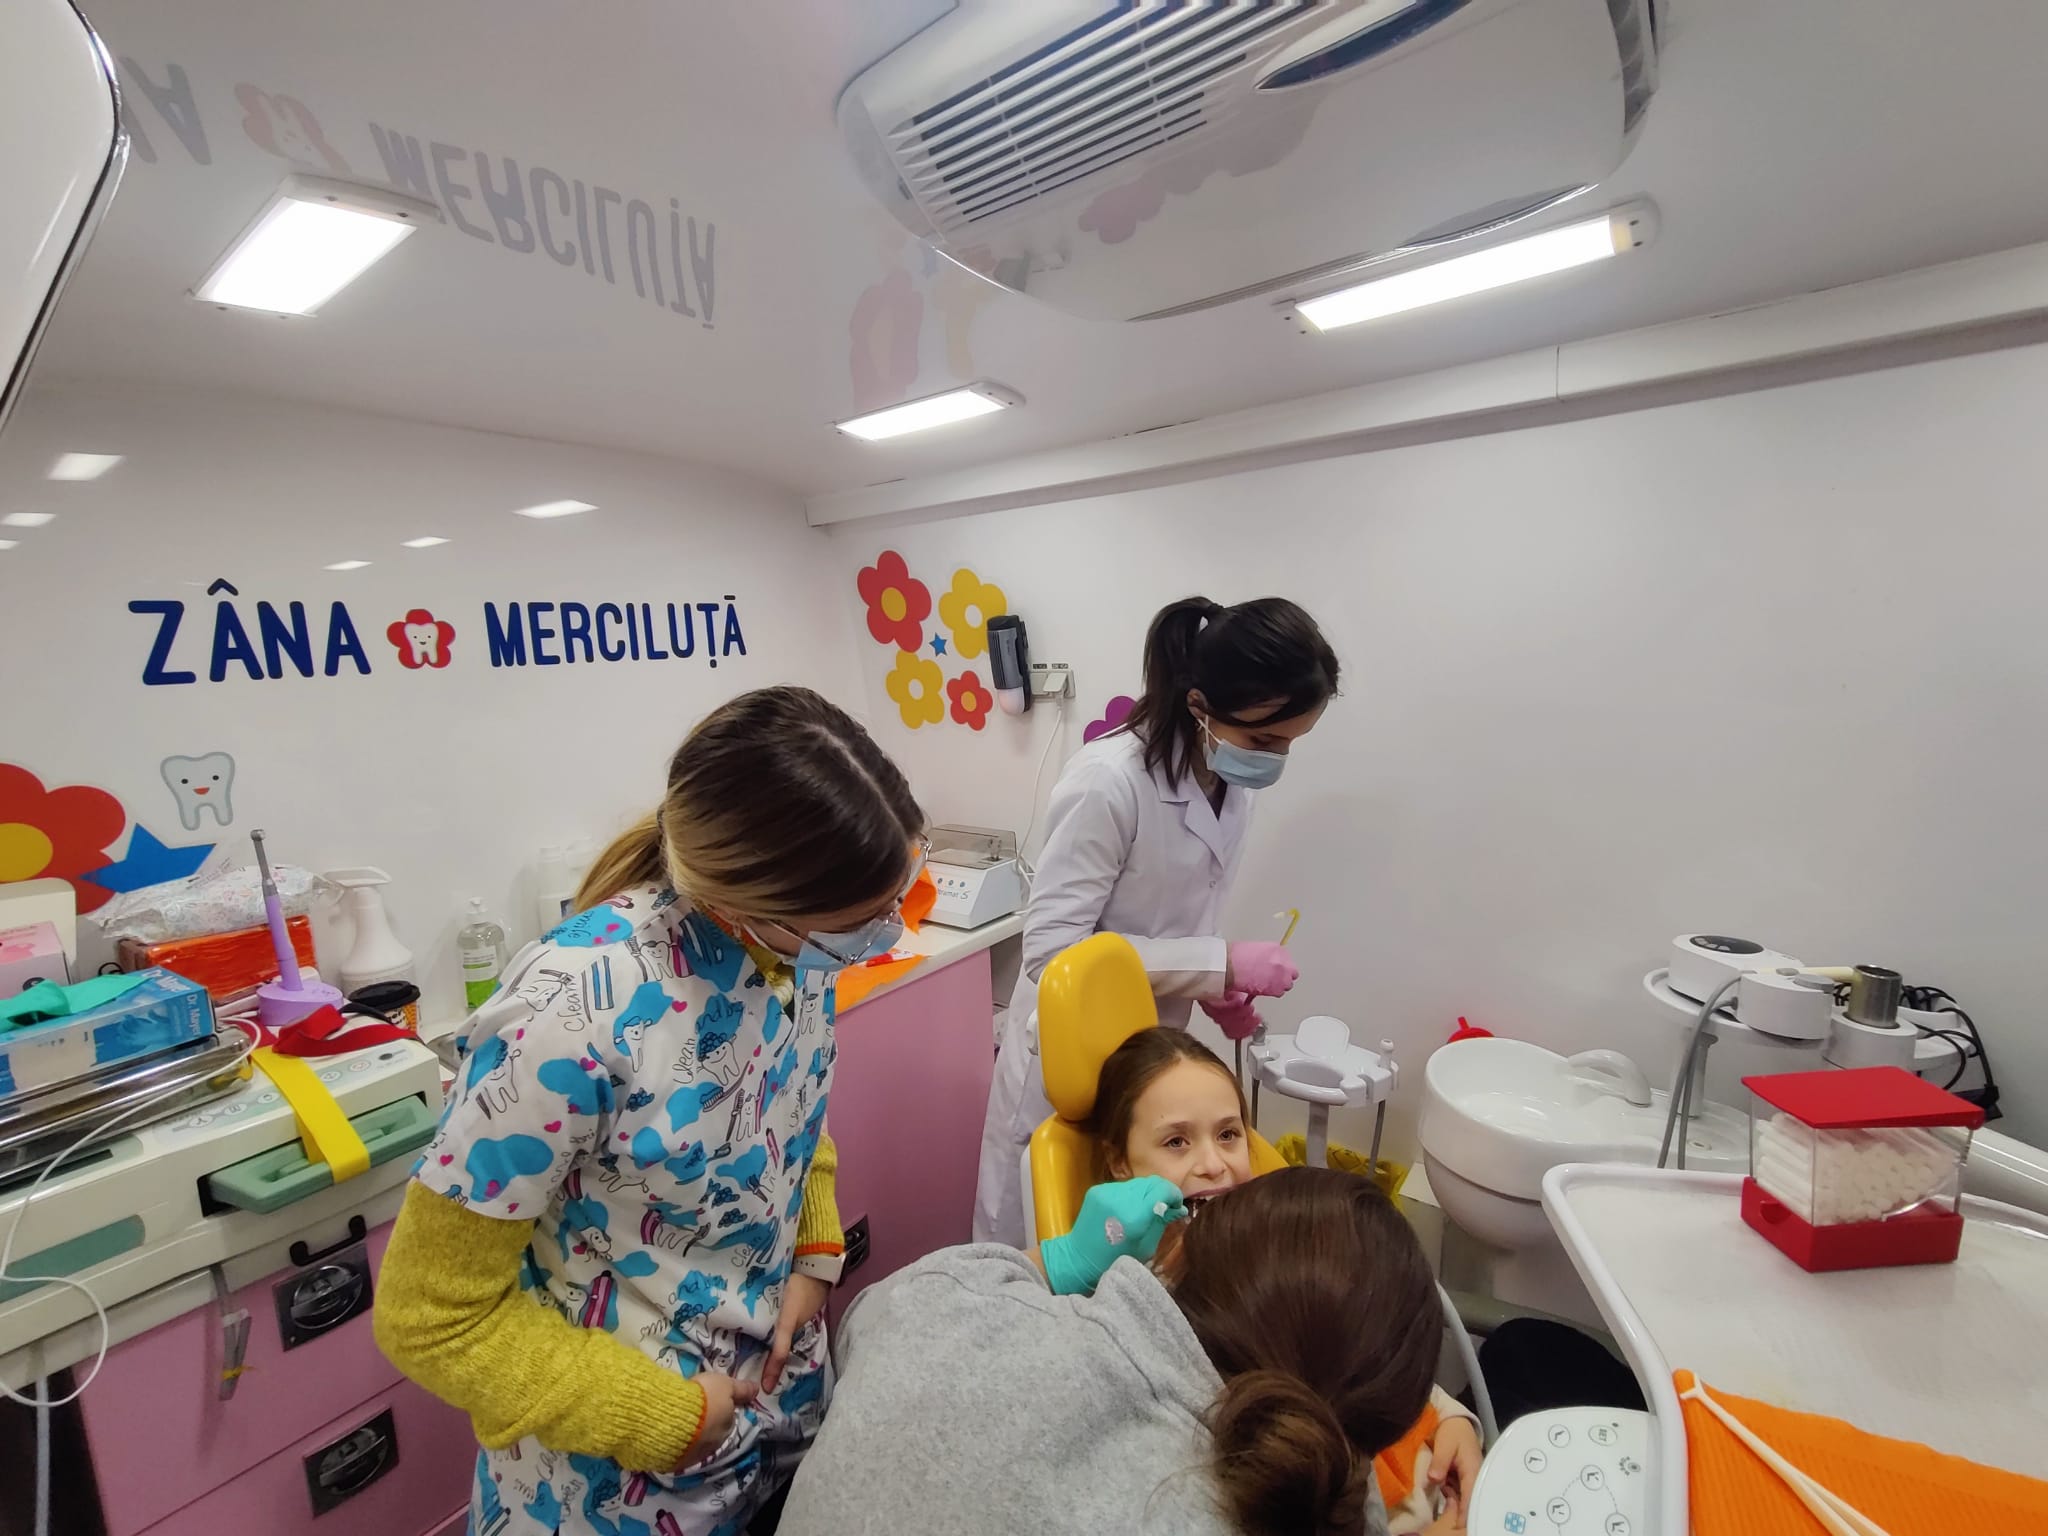 Zi de BINE: “Zâna Merciluţă”, proiectul unor medici stomatologi voluntari care repară dinții copiilor din sate izolate